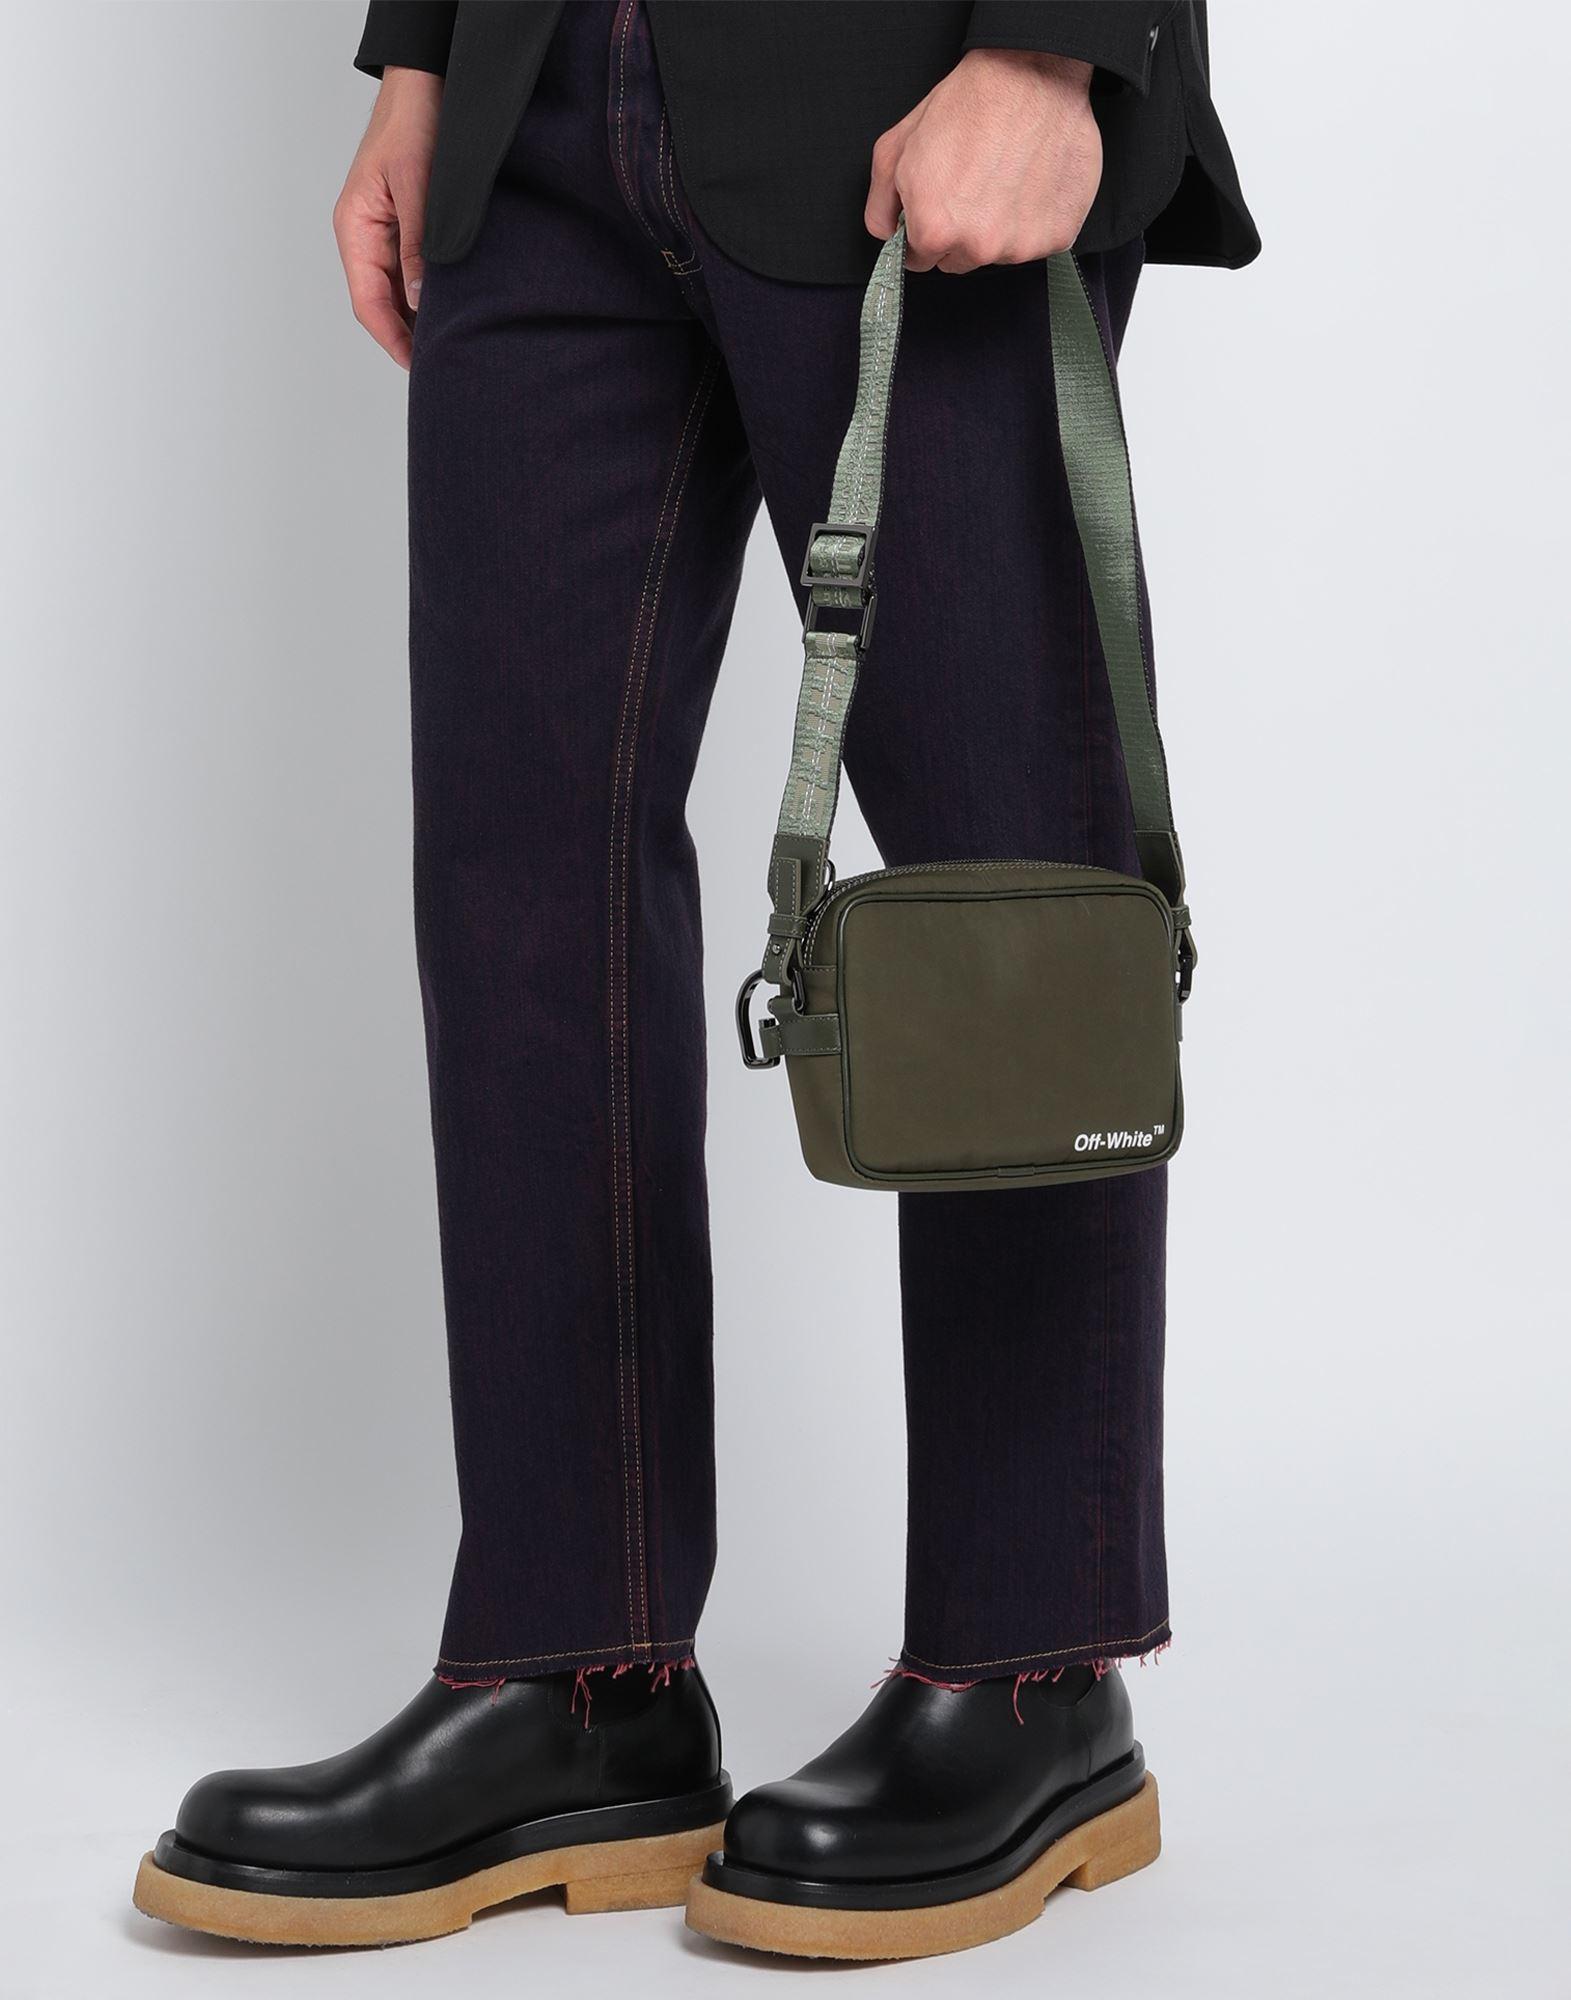 OFF-WHITE™, Green Men's Cross-body Bags